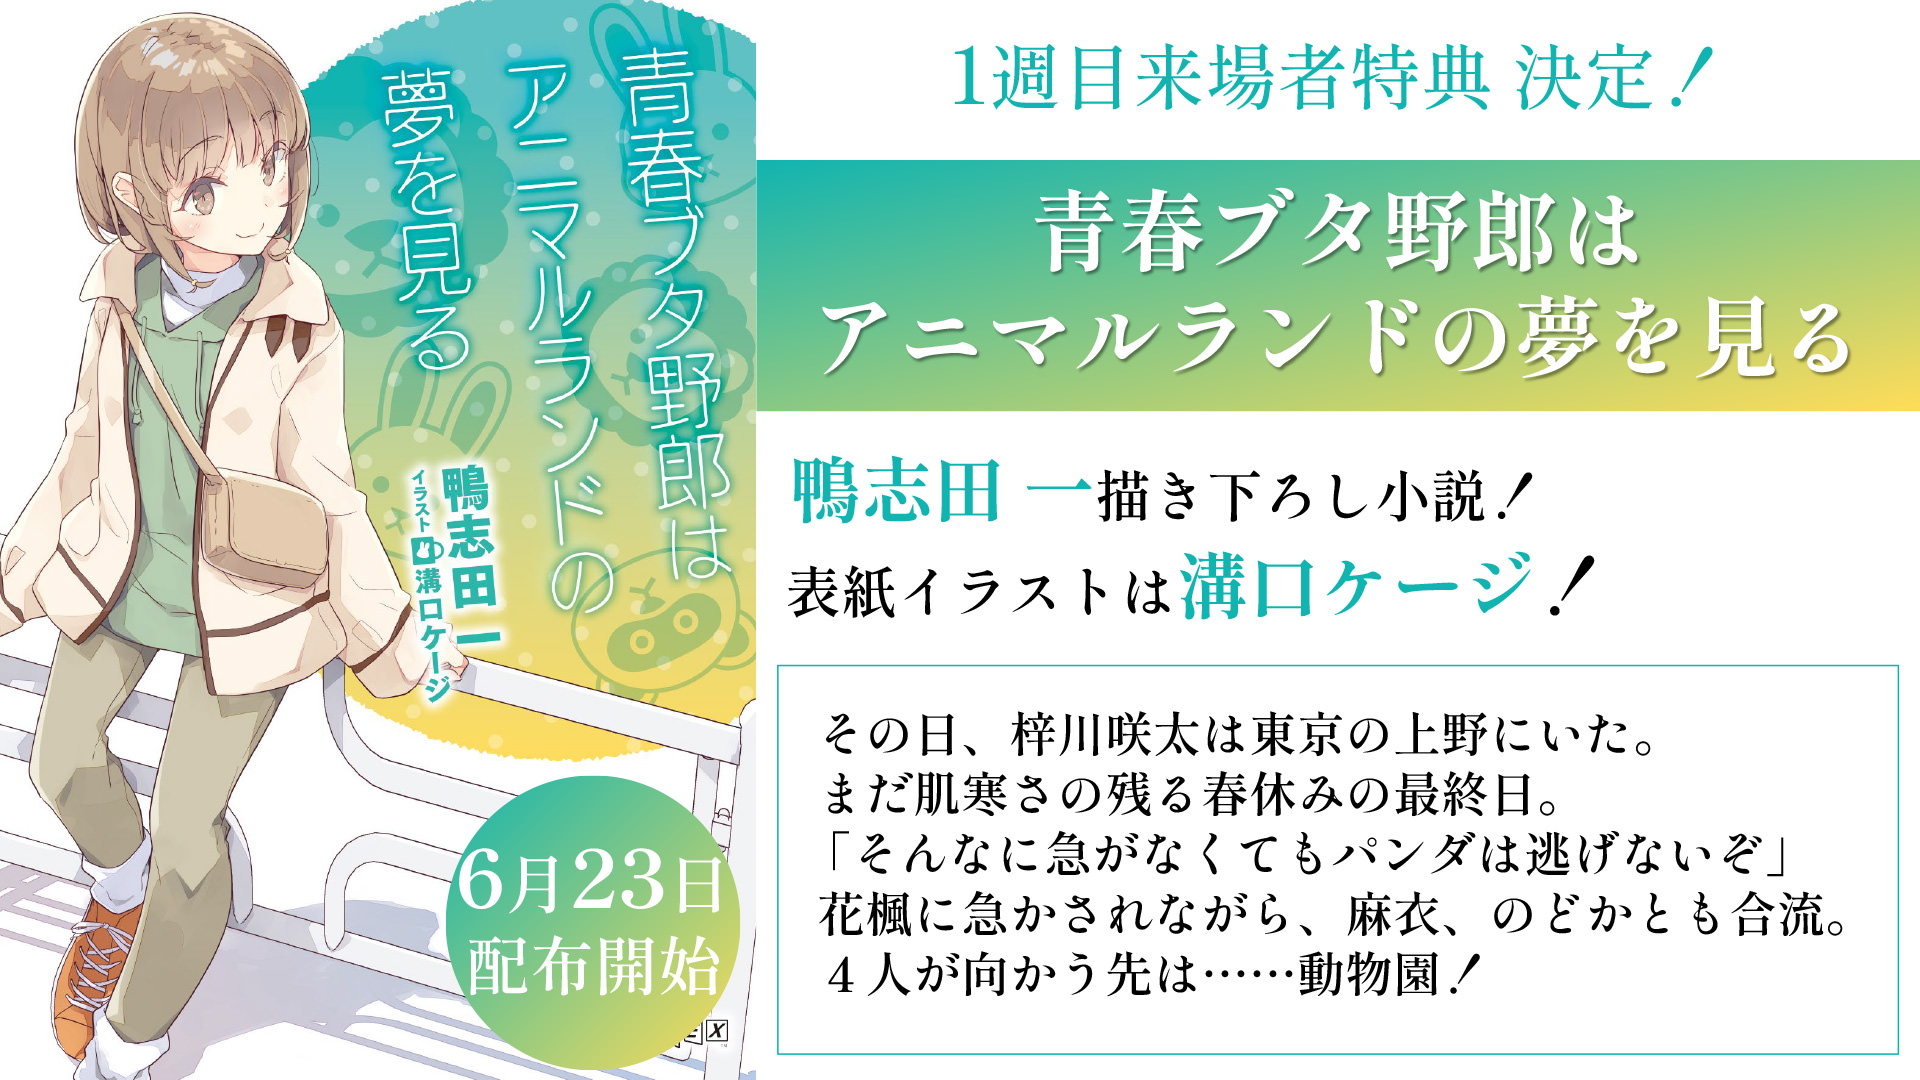 映画「青ブタ」6月23日より第1弾入場者特典 “書き下ろし小説” を配布!